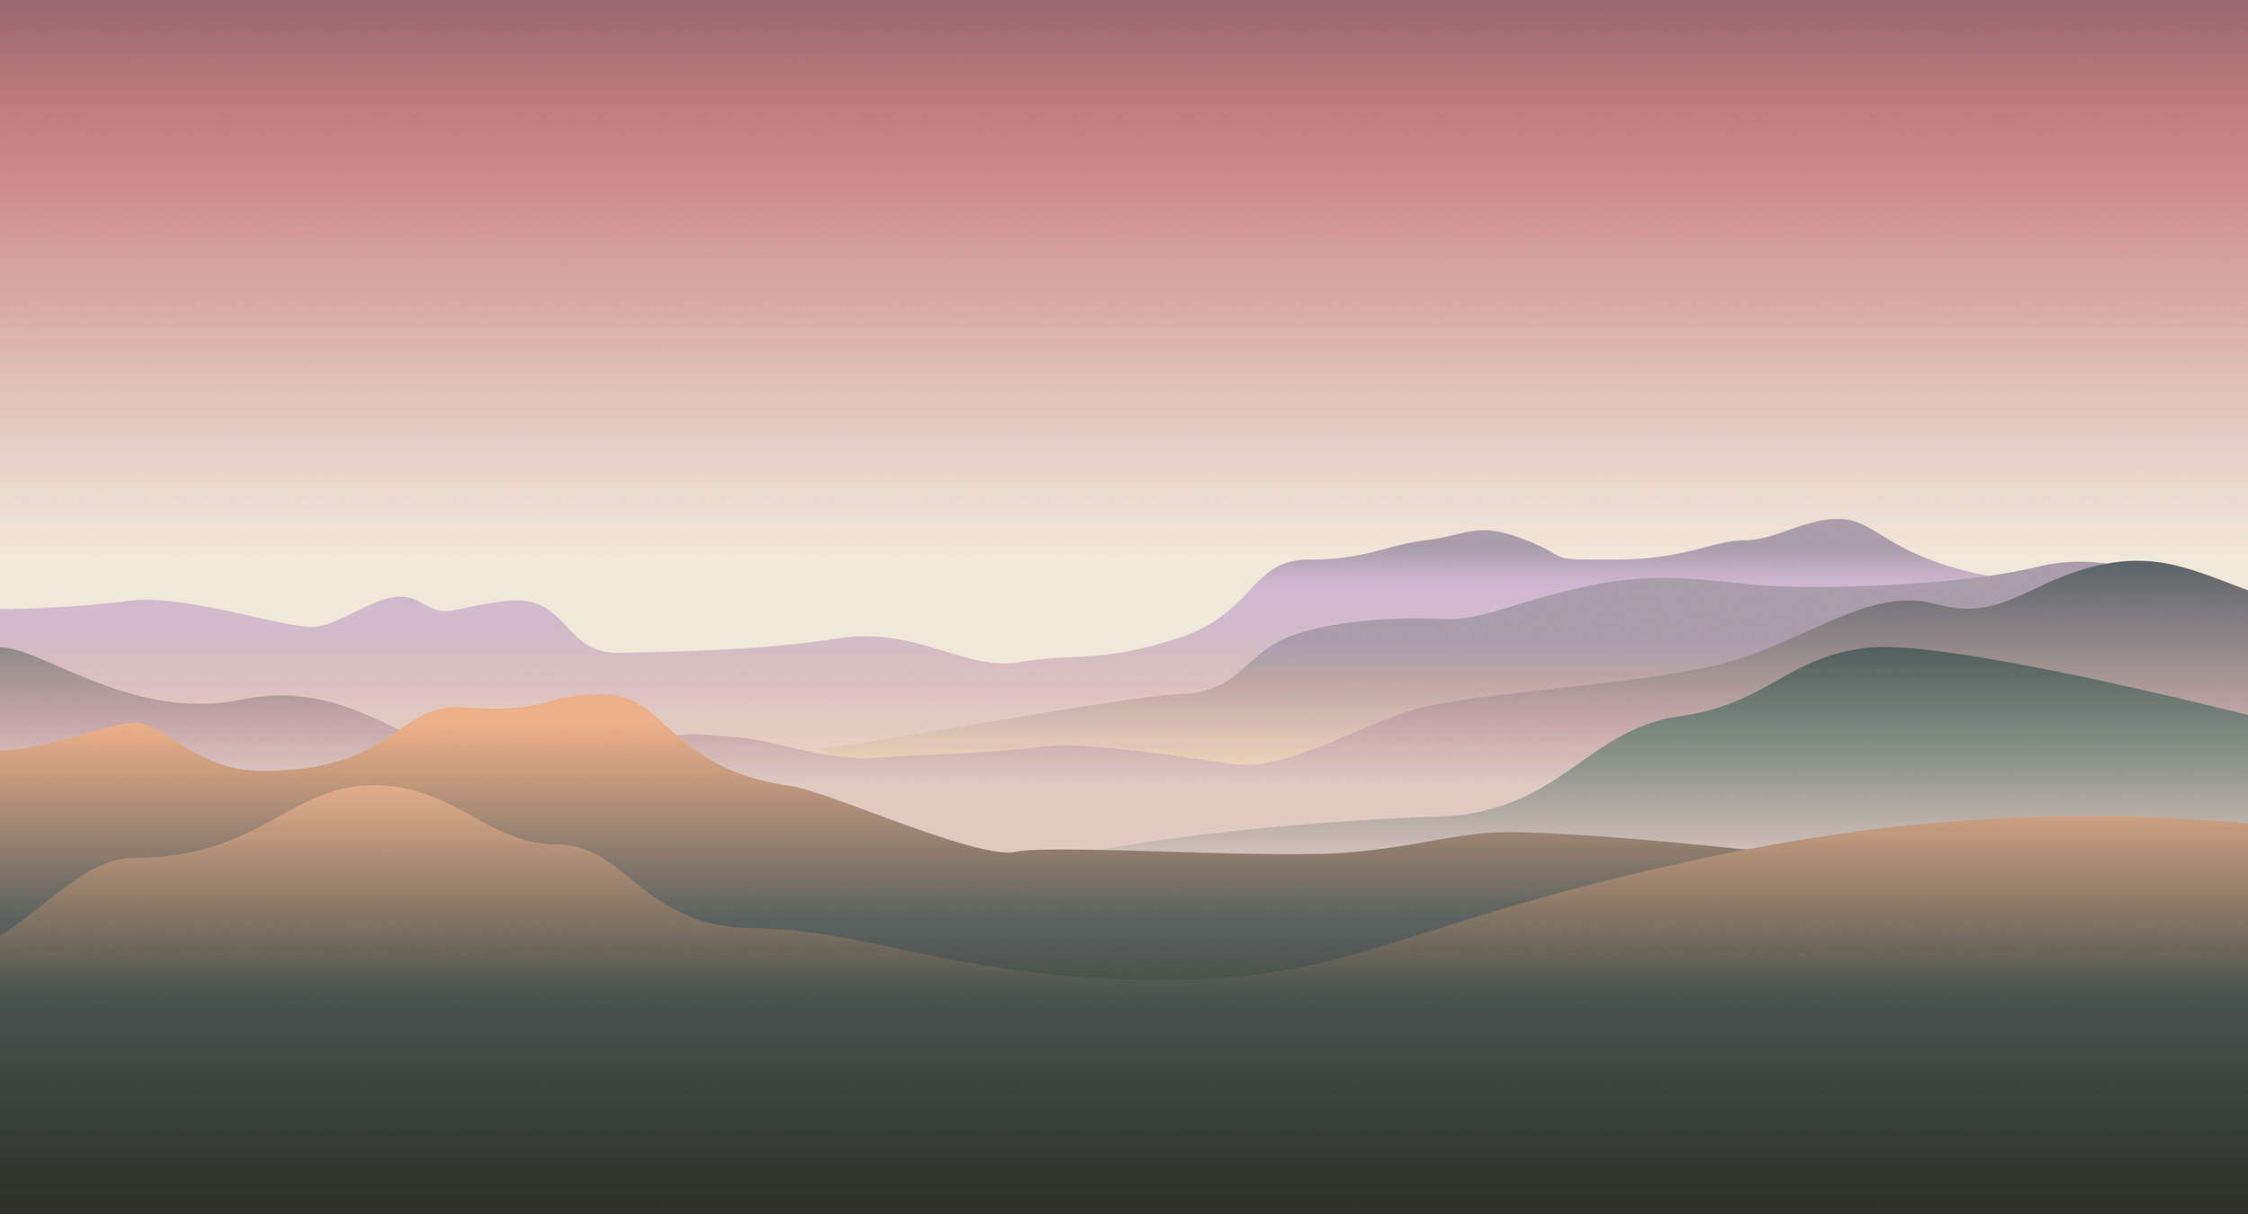             Fotomural »terra« - Coloreado paisaje de montaña - Tela no tejida de alta calidad, lisa y ligeramente brillante
        